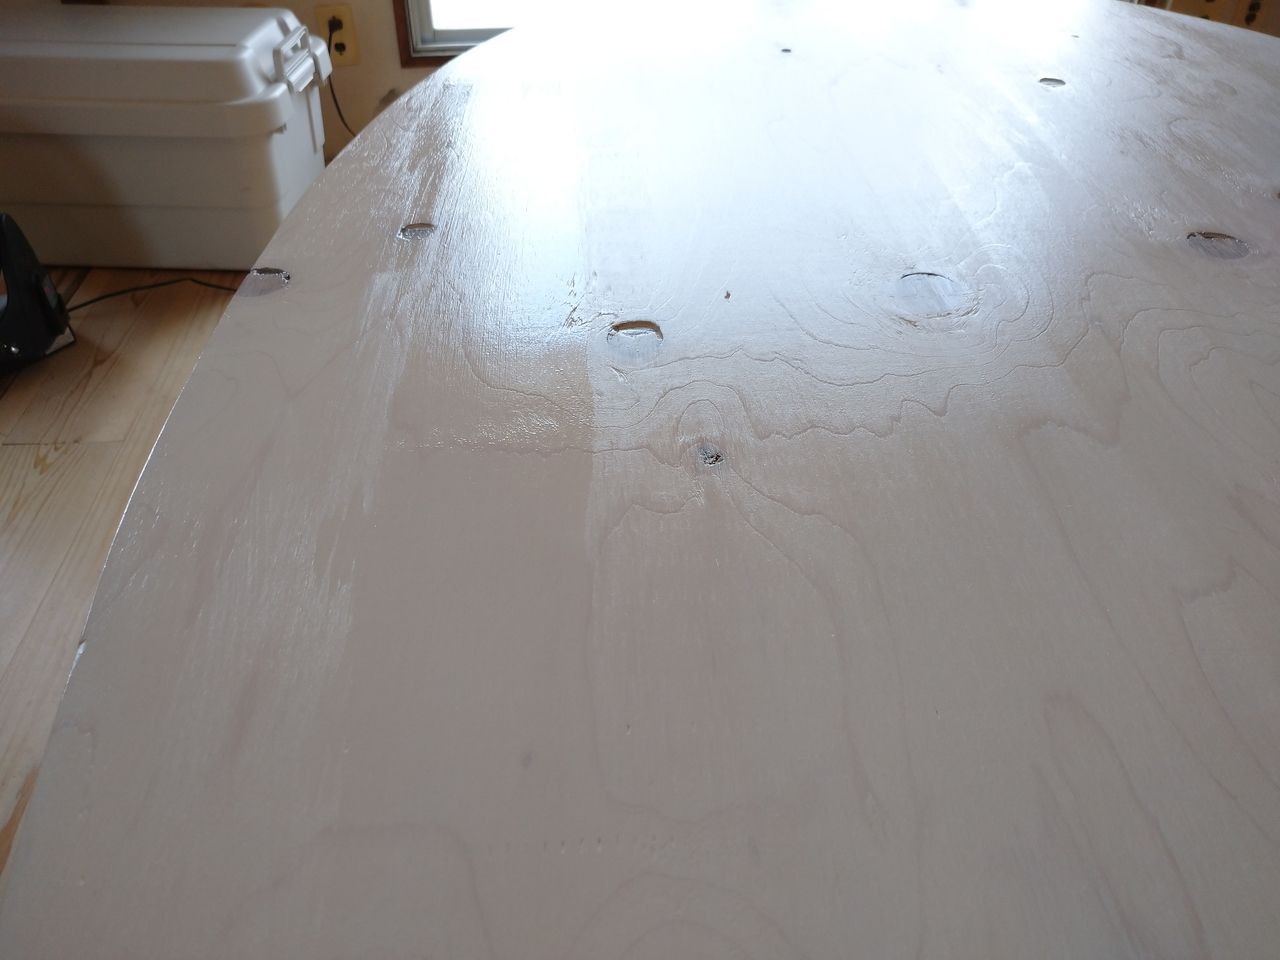 そして2回目。ニスはほぼ透明色なので、2回目を塗ってもイマイチ変化が分かりません。しかし、ニスを塗装する前と比べるとツヤ感が加わり、よりお米らしくなりました。これでテーブルの天板は完成です。